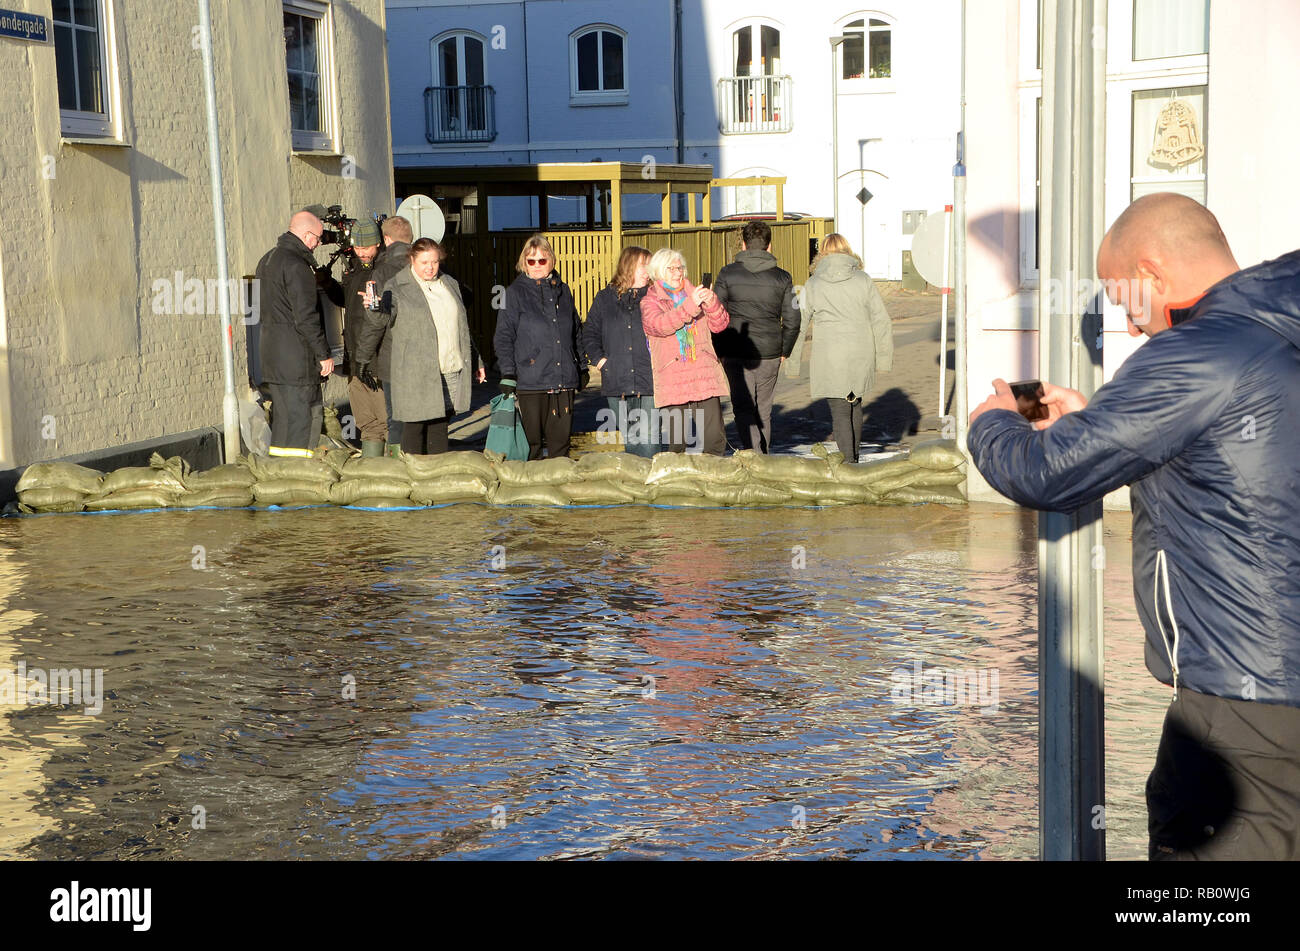 Sonderborg, Danemark - 2 janvier 2019 : Une rue a été bloquée avec des sacs en raison d'une onde de tempête. Les gens se tenir derrière les sacs de sable en regardant les flo Banque D'Images